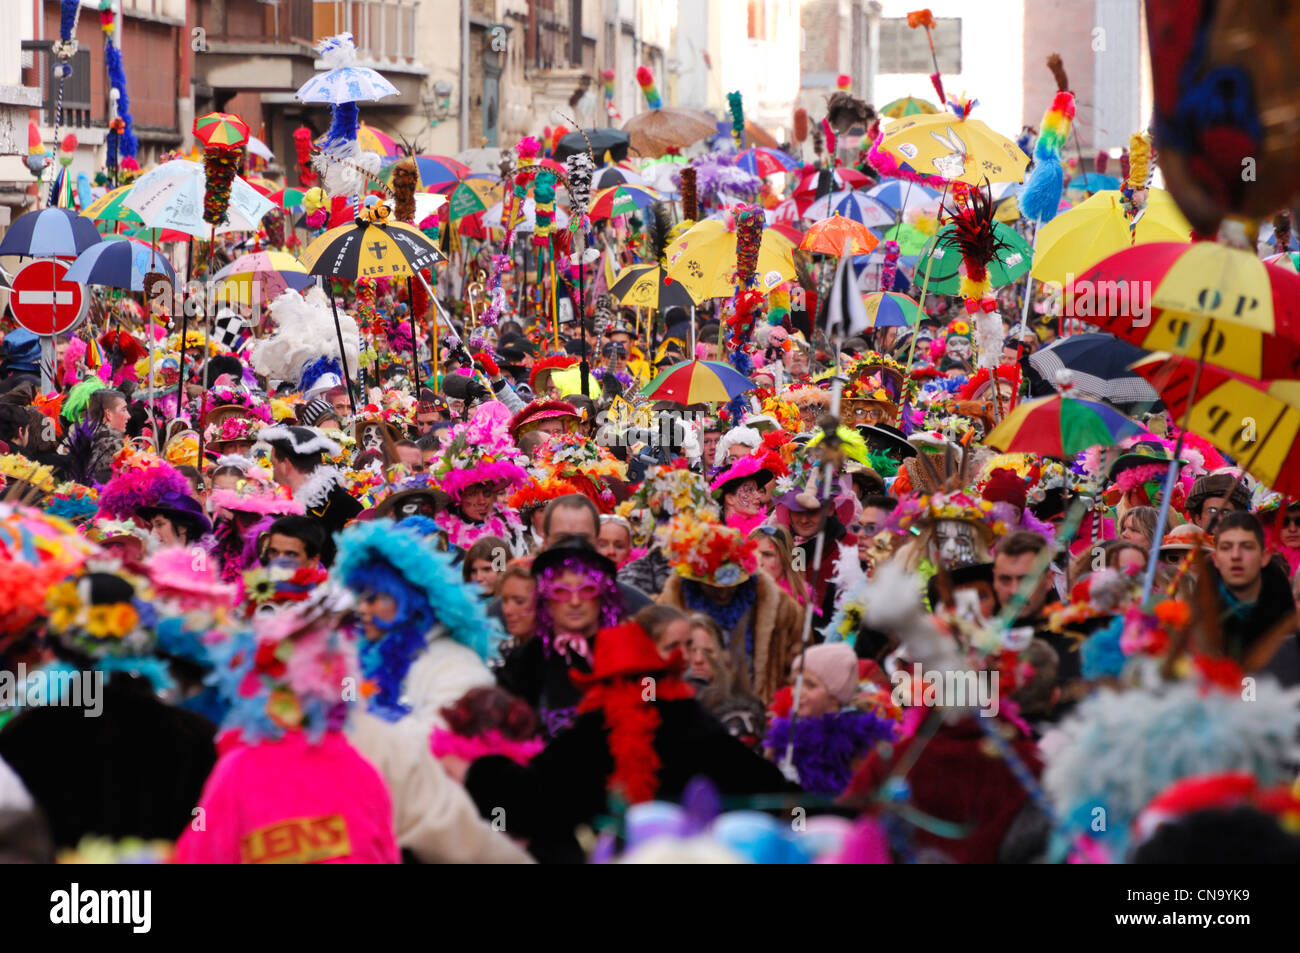 France, Nord, Dunkerque, carnaval de Dunkerque, parasols colorés sur la foule du carnaval Banque D'Images